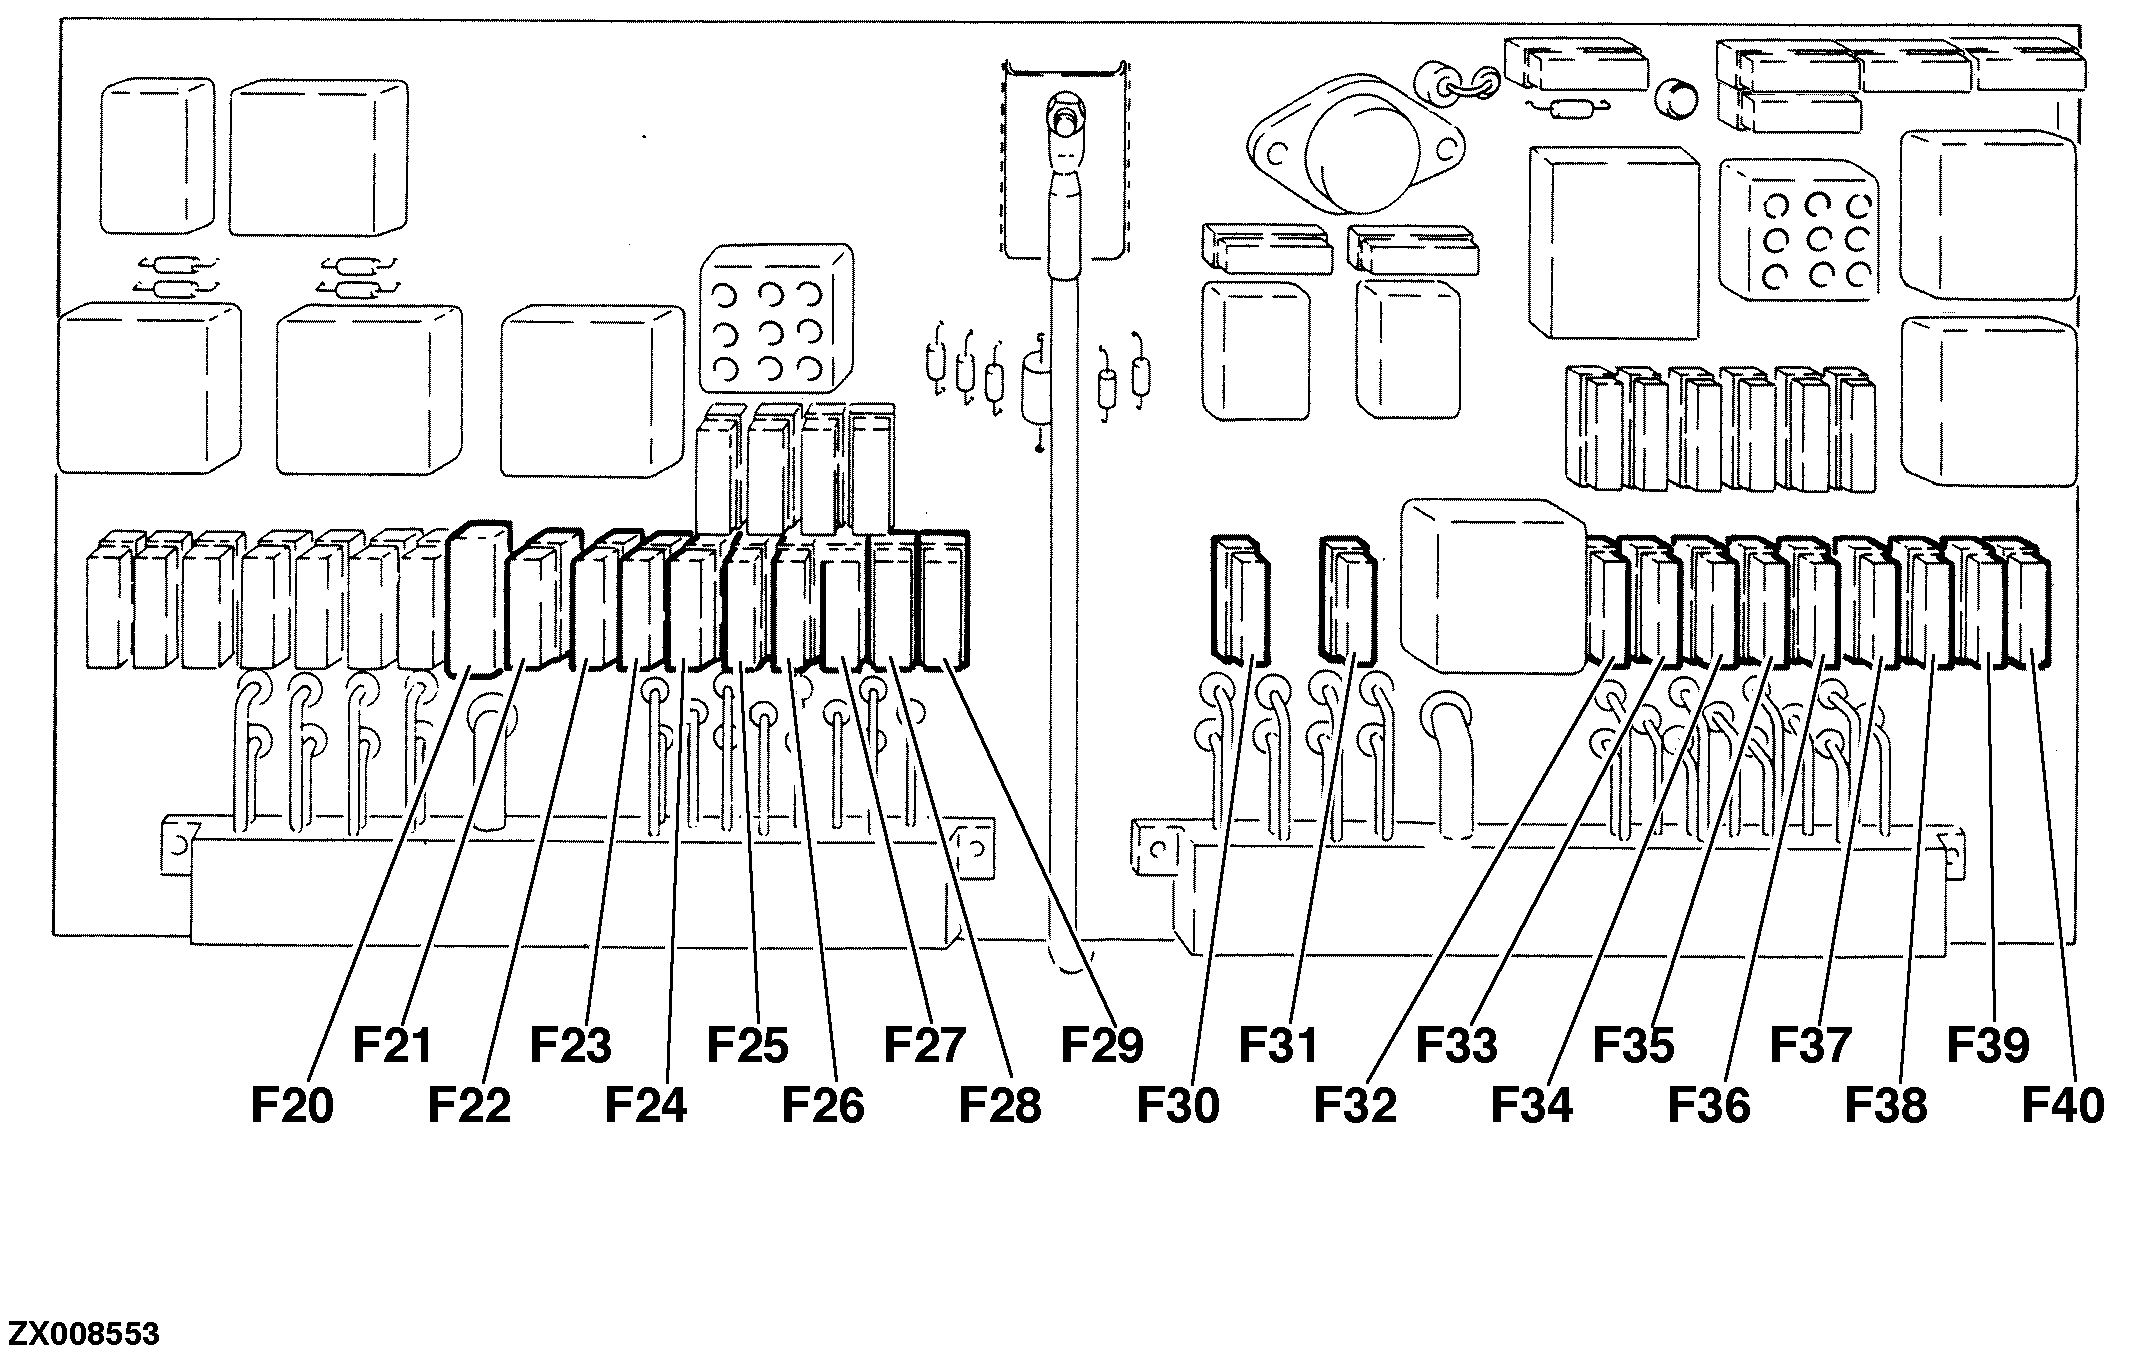 wiring diagram ac compresor john deere 9560 combine